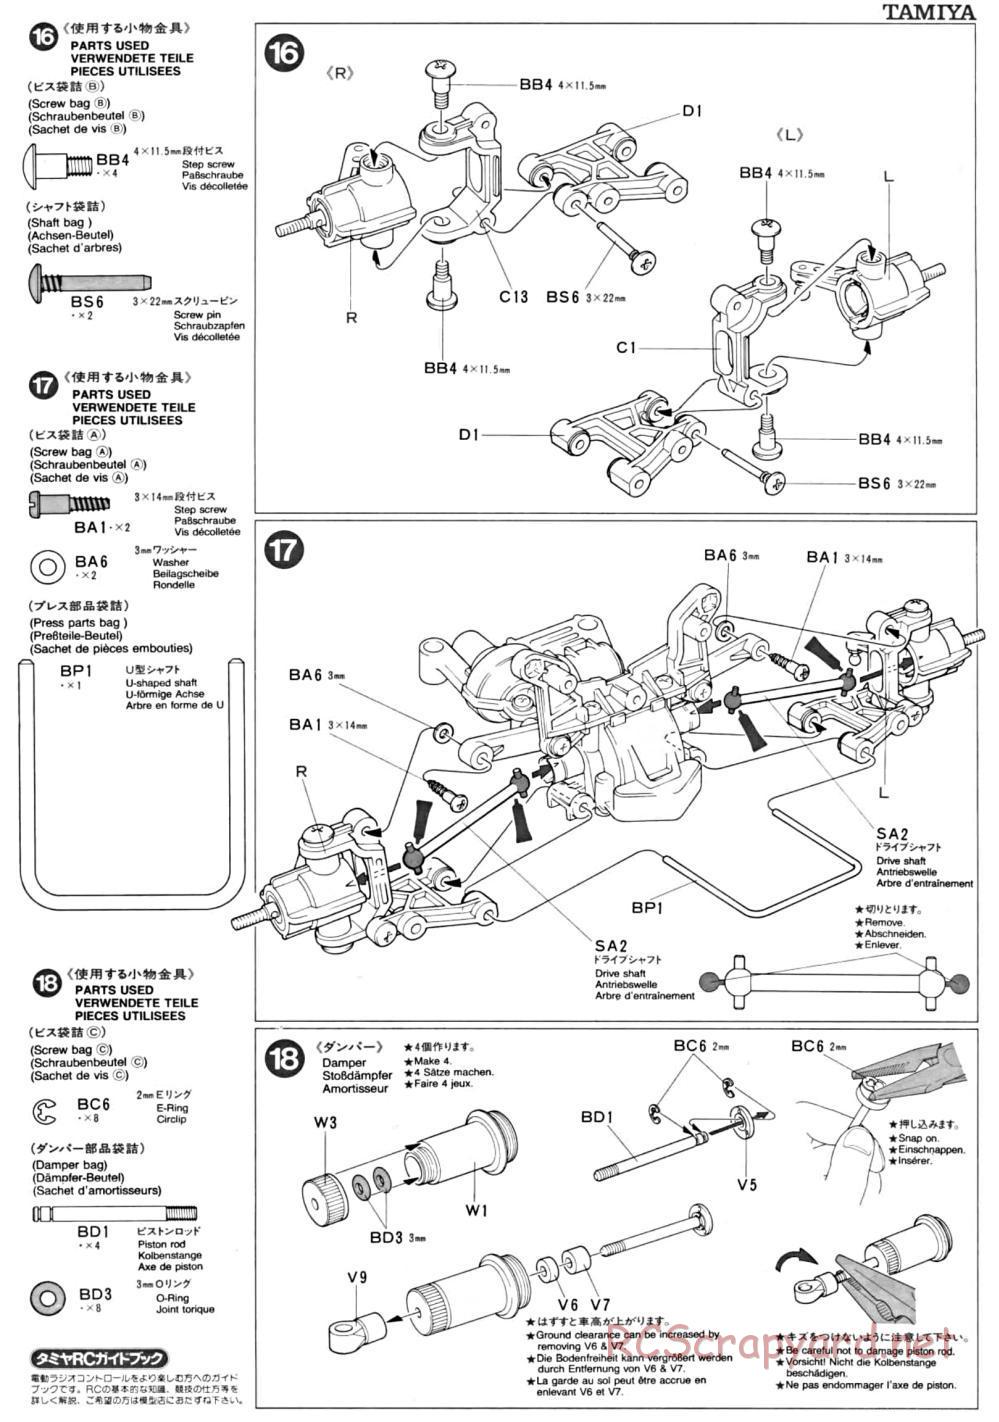 Tamiya - TA-01 Chassis - Manual - Page 6